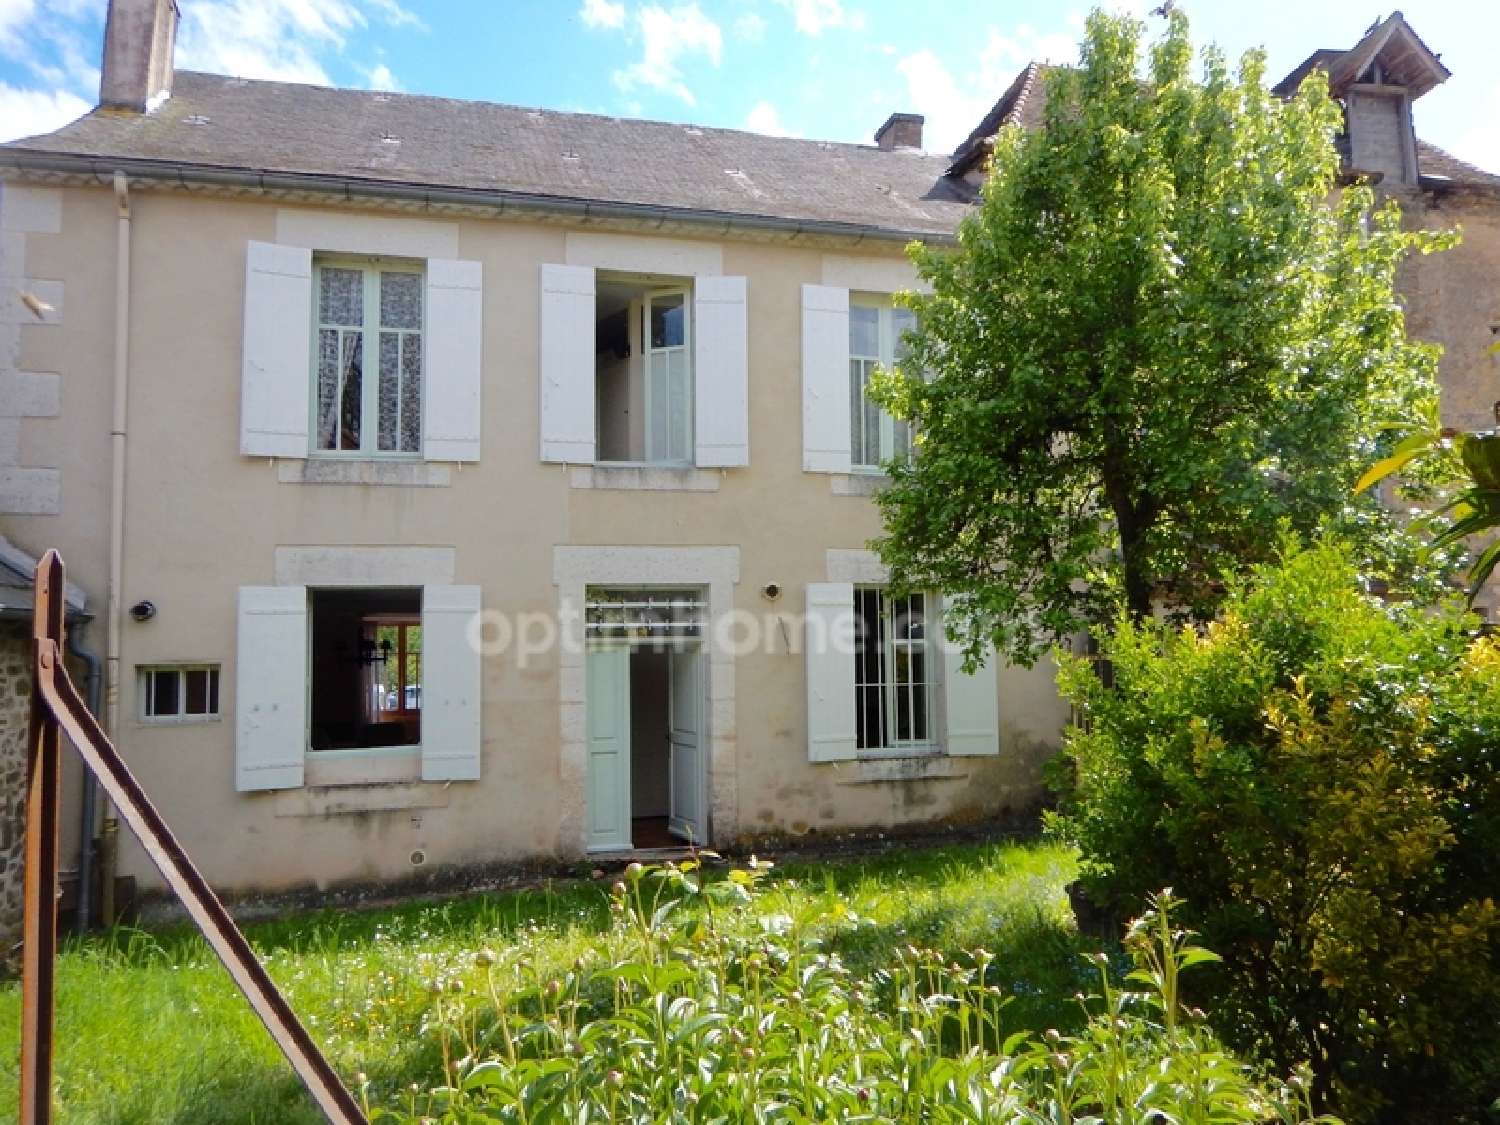  à vendre maison de village Sarrazac Dordogne 1